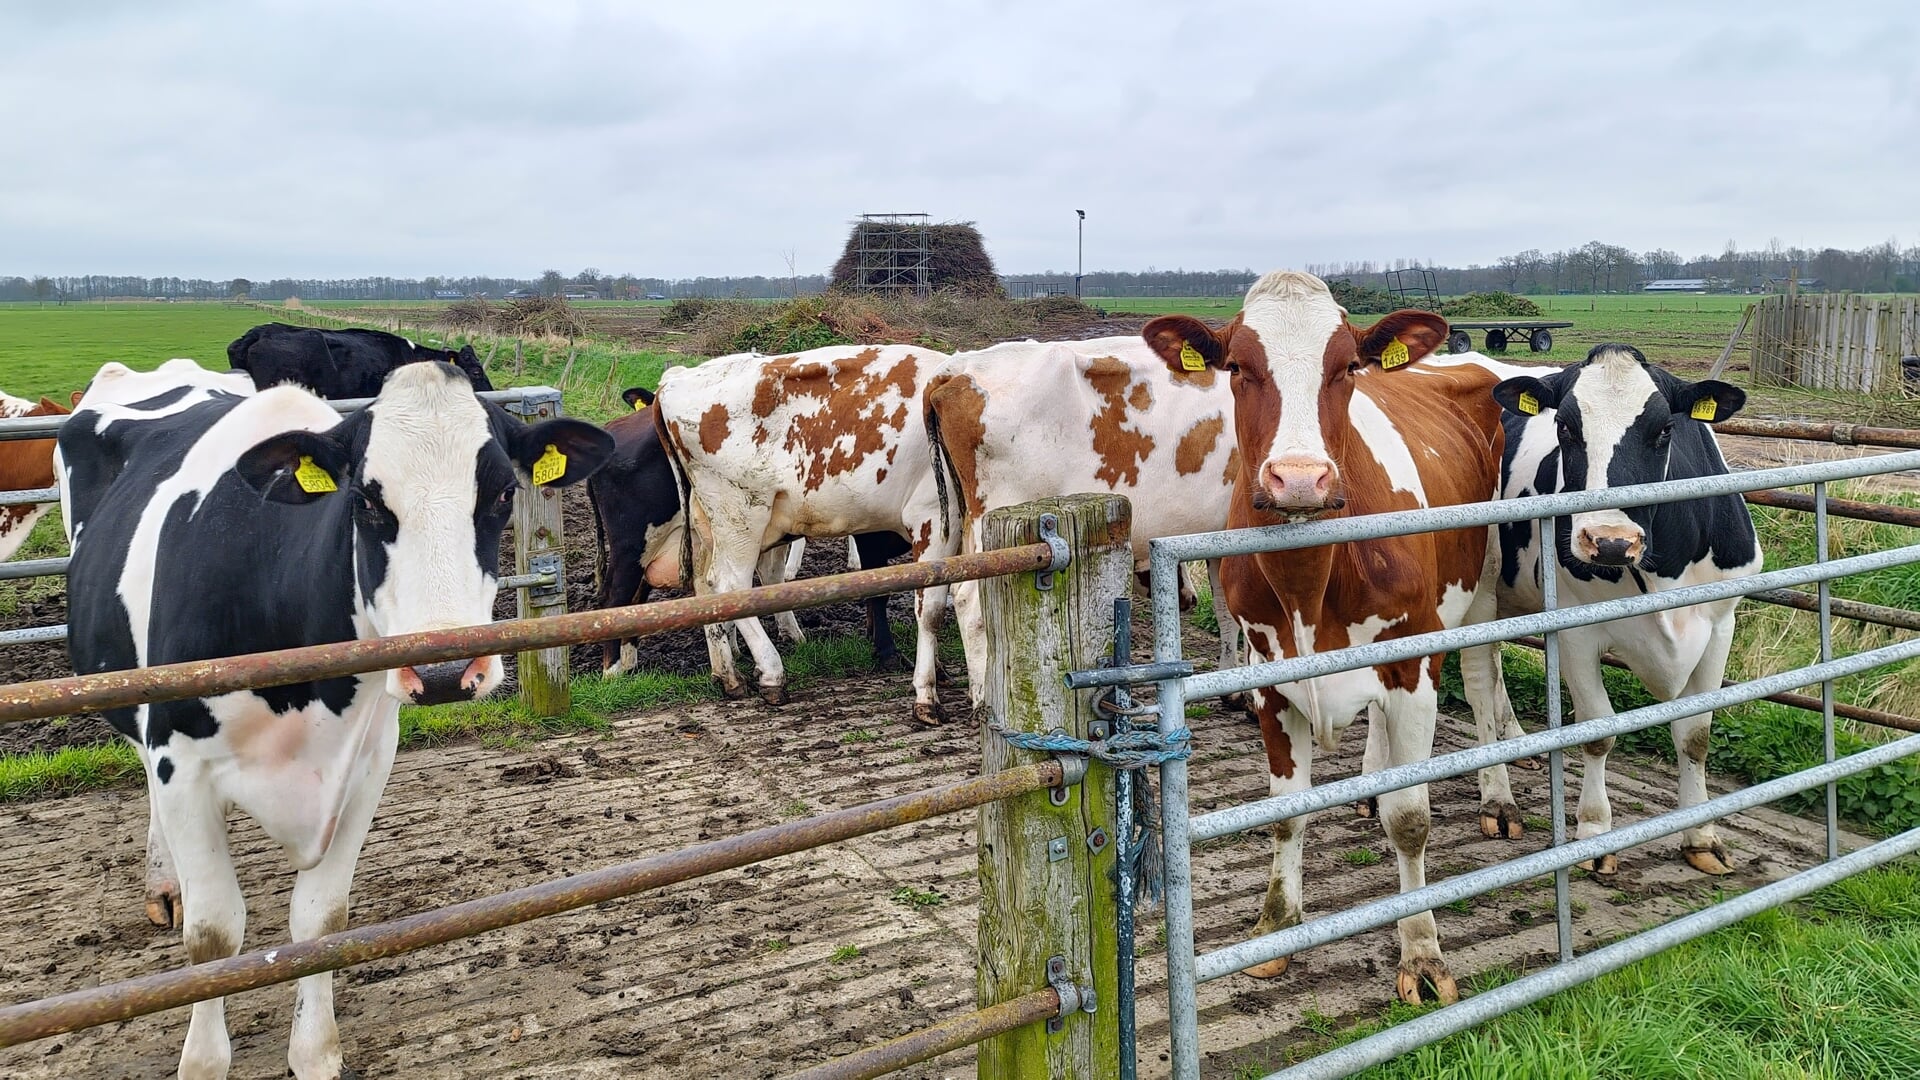 De koeien houden de wacht bij de poasboake van Holterbroek. De komende dagen wordt daar nog hard gewerkt om er een mooie poasboake van te maken.